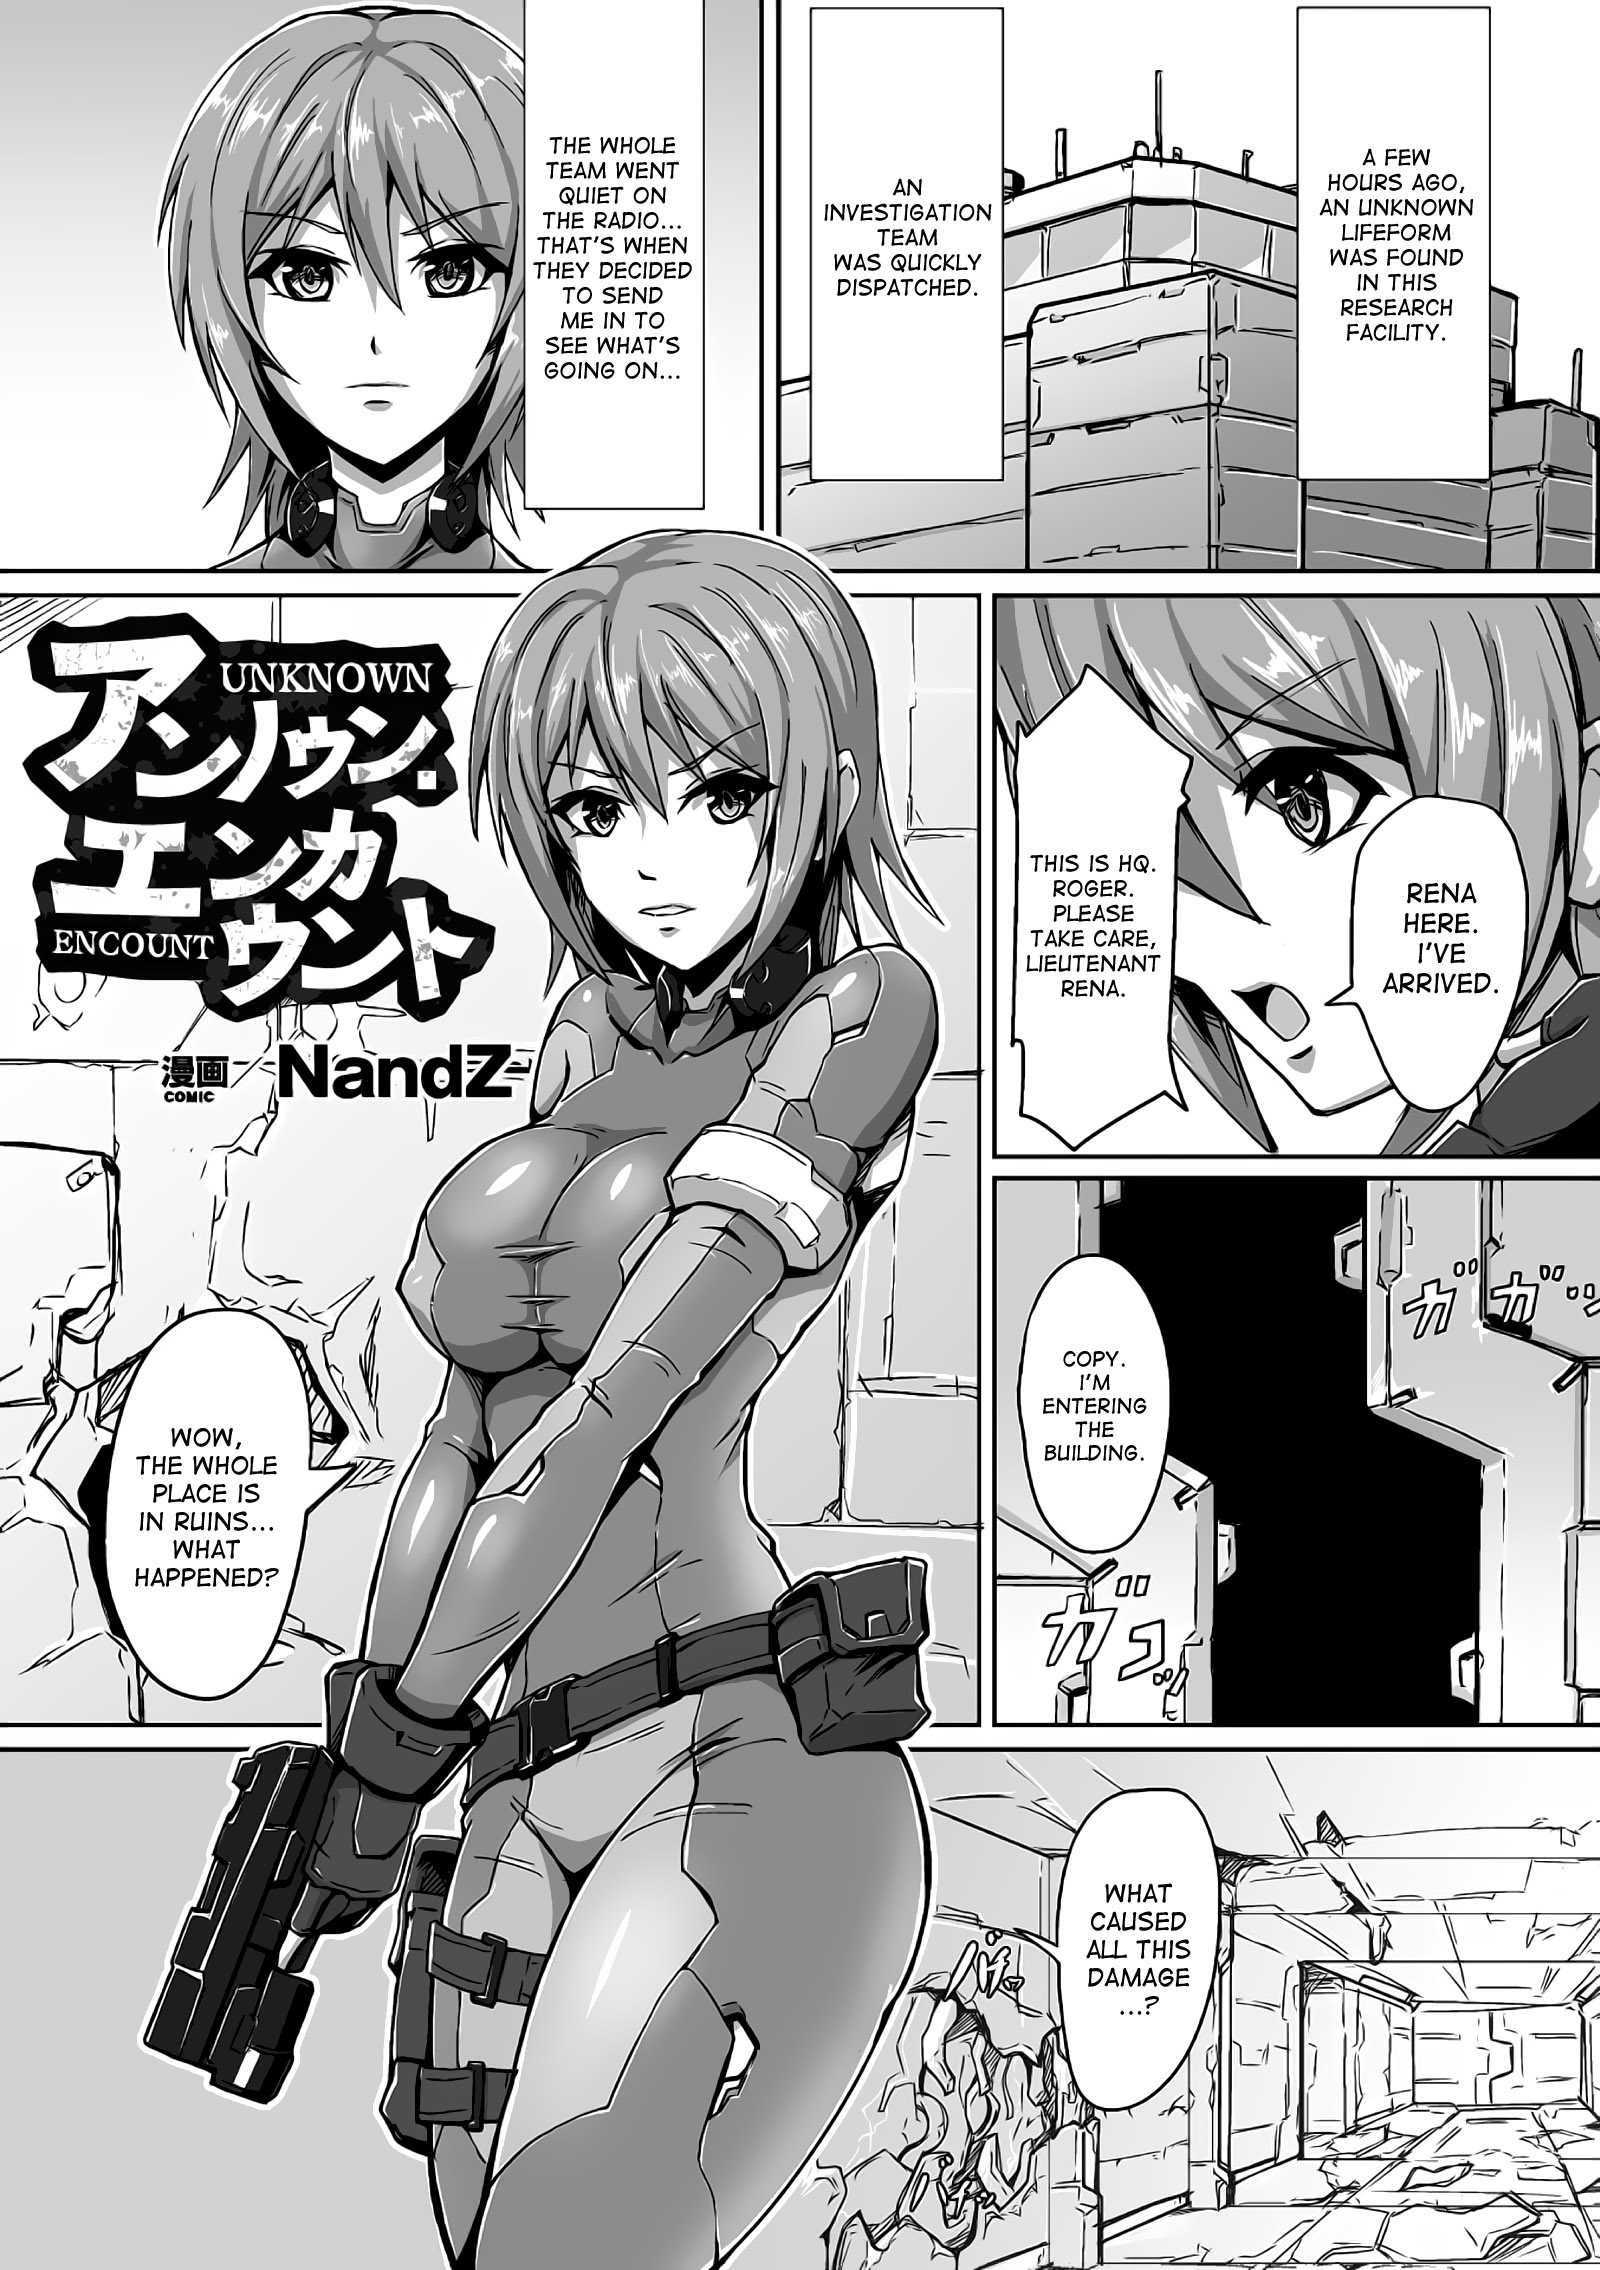 NandZ Unknown Encount 2D Comic Magazine Futanari Musume ni Nakadashi Haramase Vol 1 desudesu 977489 0001